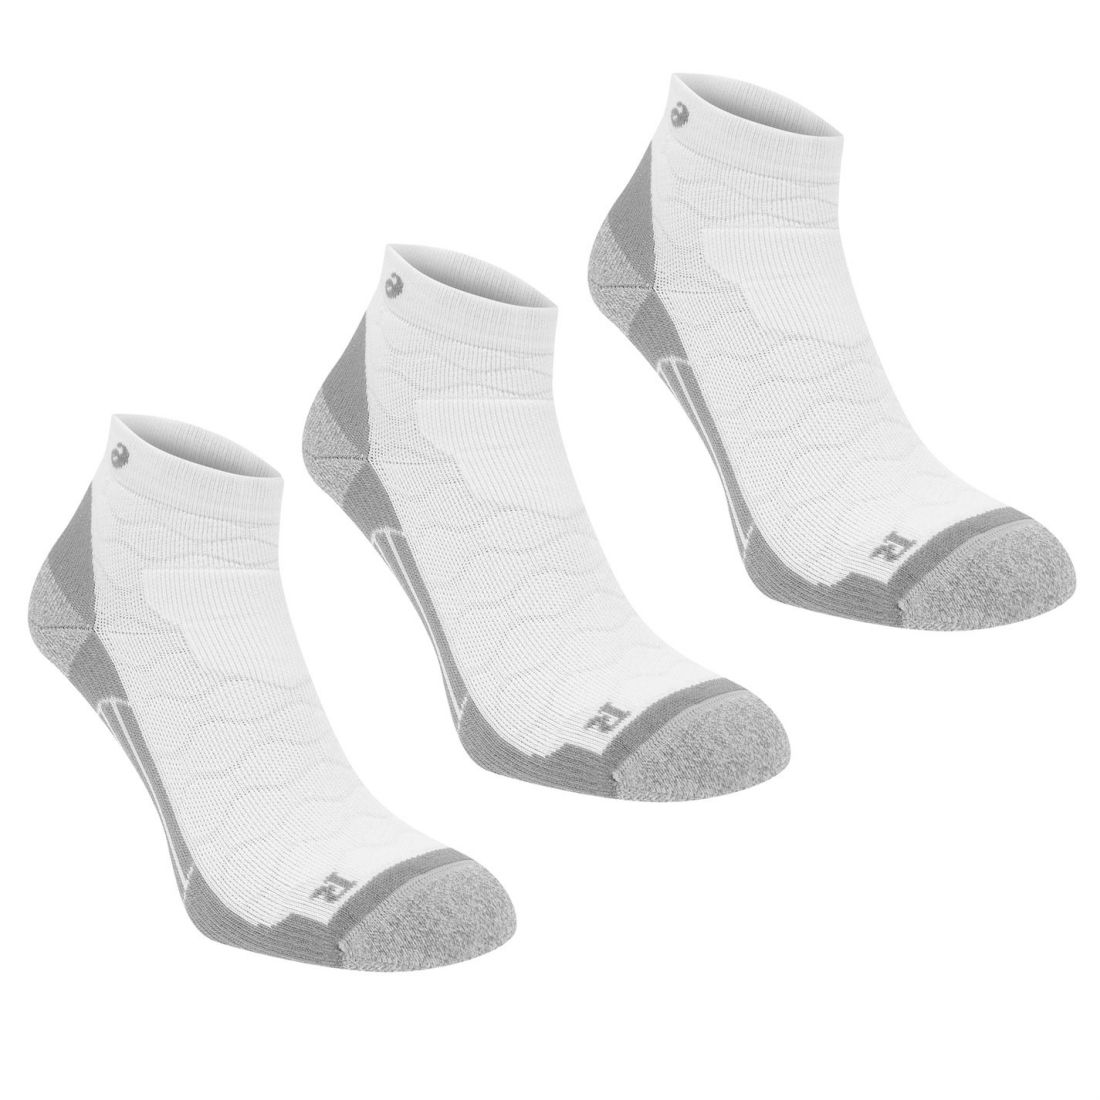 asics men's quarter socks